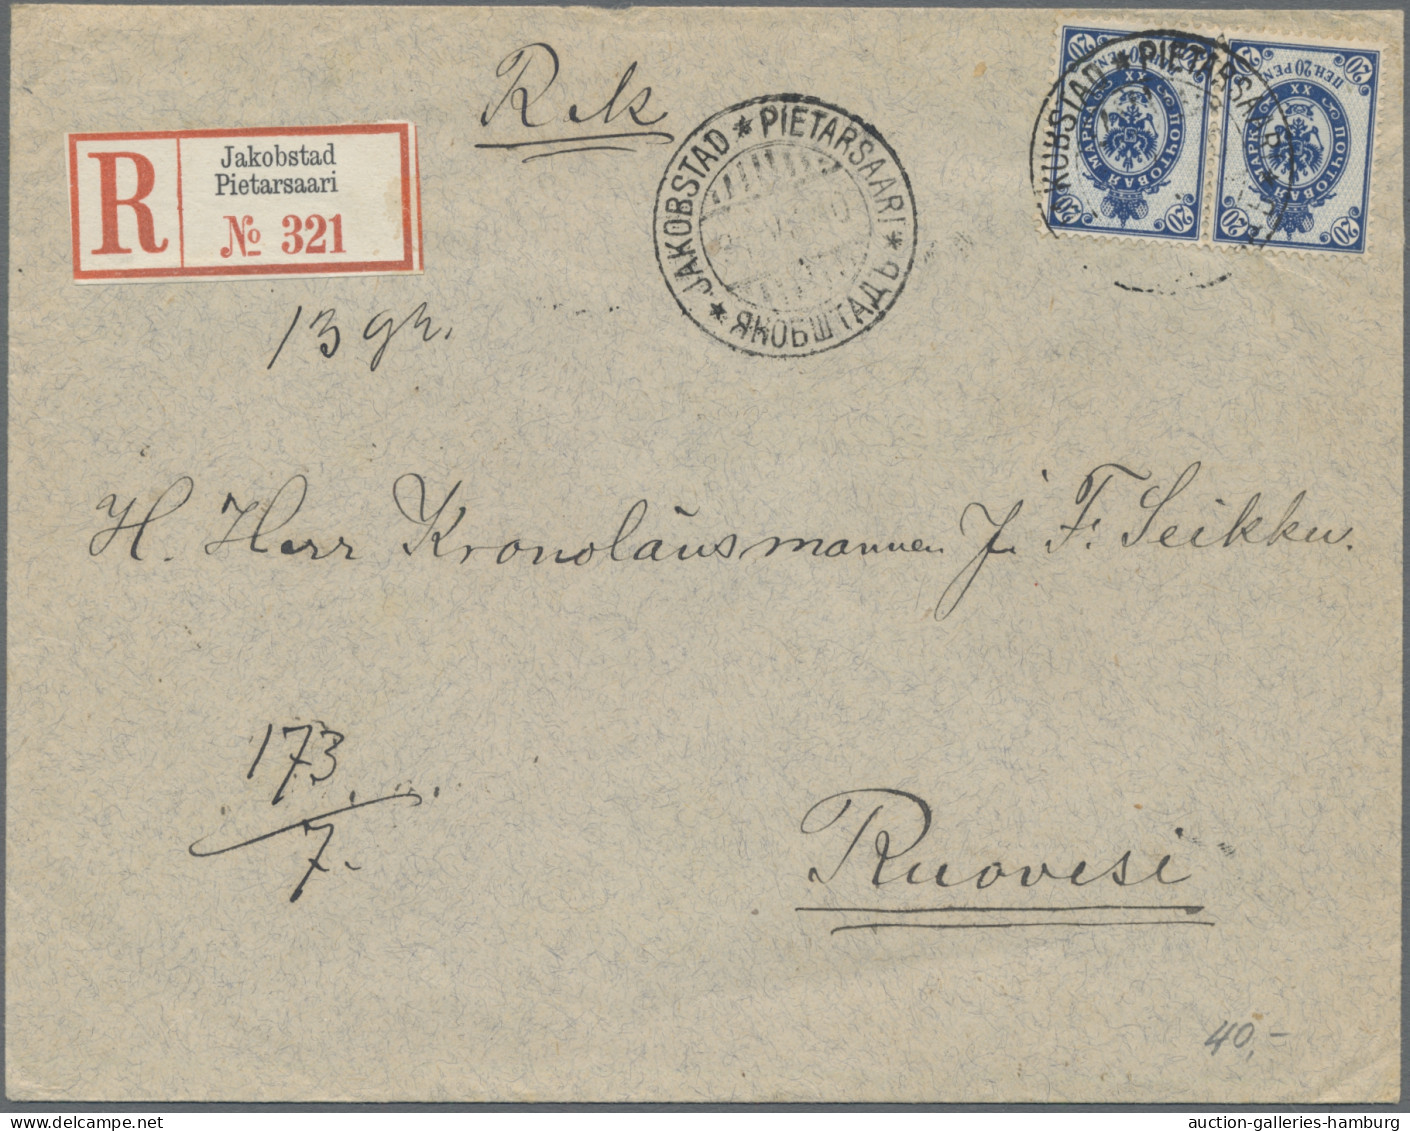 Finland: 1895-1955, Partie aus ca. 60 Belegen / Karten, inkl. Schiffspost, Einsc